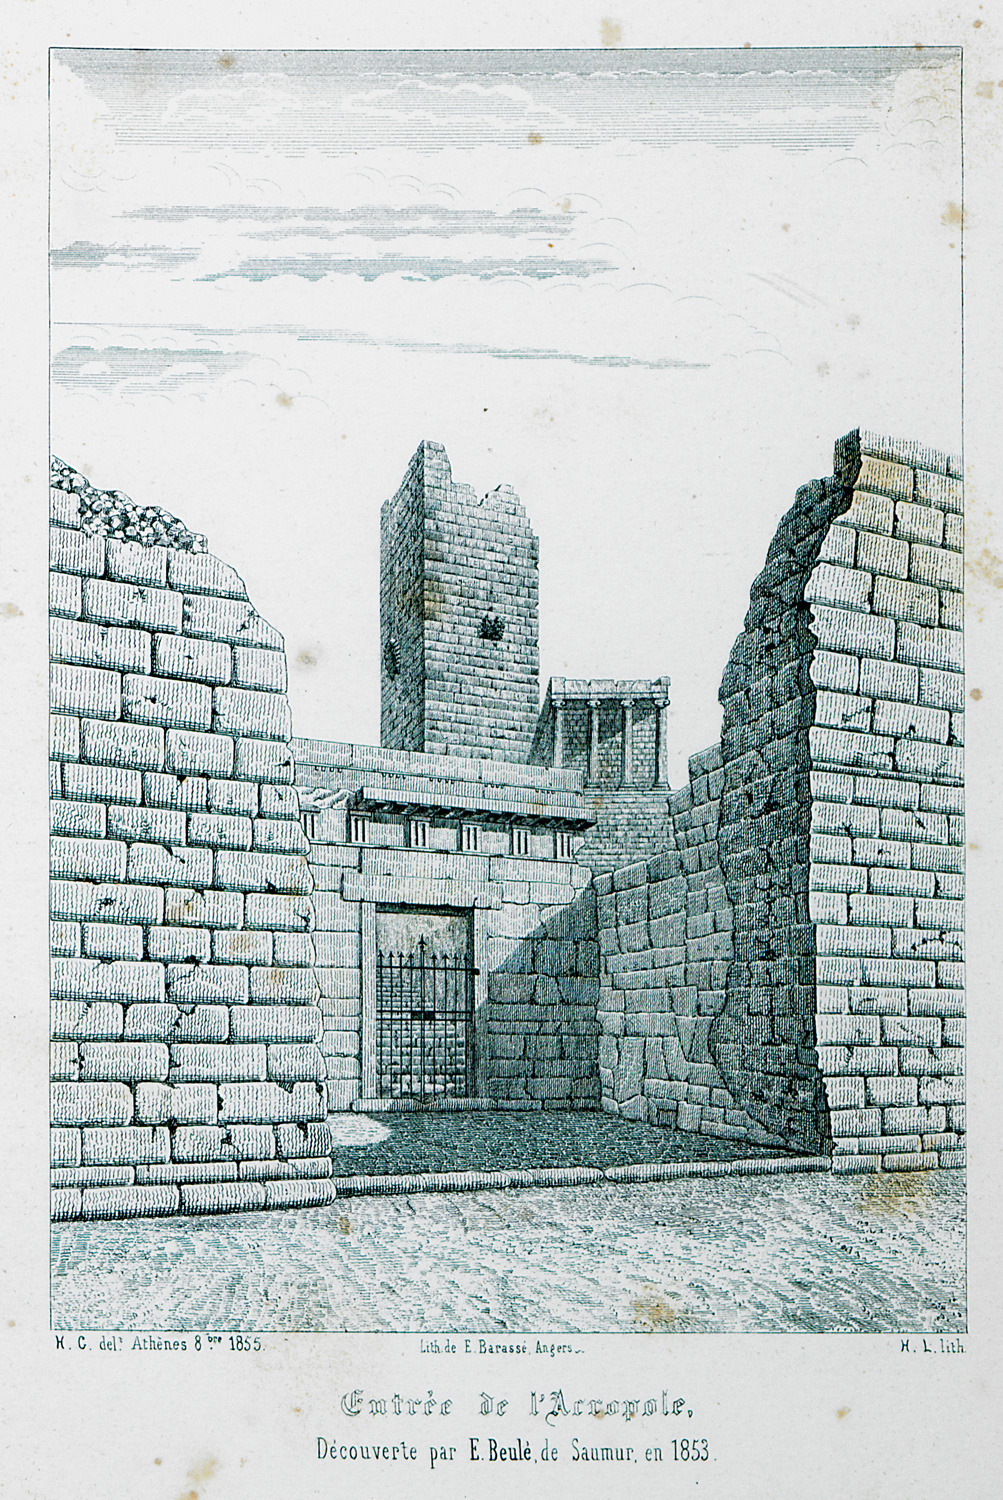 Η πύλη του Μπελέ (Beulé), κύρια είσοδος στην Ακρόπολη των Αθηνών, το 1853, πριν την κατεδάφιση των μεσαιωνικών οχυρώσεων